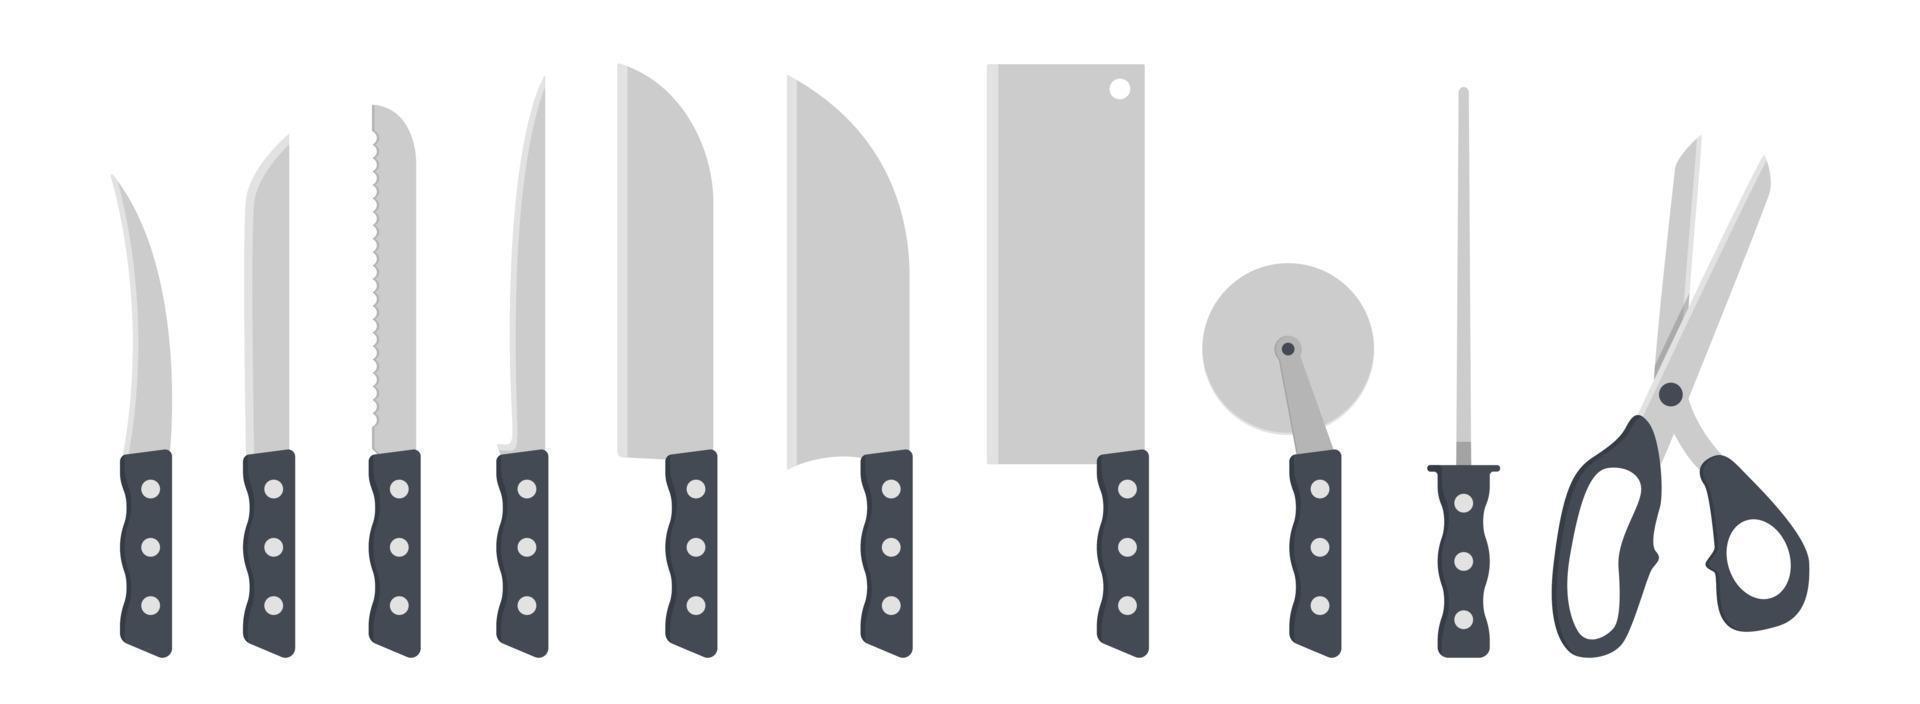 conjunto de ilustración de vector de imágenes prediseñadas de cuchillos de cocina. cuchillo con mango de plástico de diseño plano. cáscara, verdura, filete, santoku, cuchilla, cortador de pizza, afilador de cuchillos, tijeras. logotipo de icono de concepto de cocina